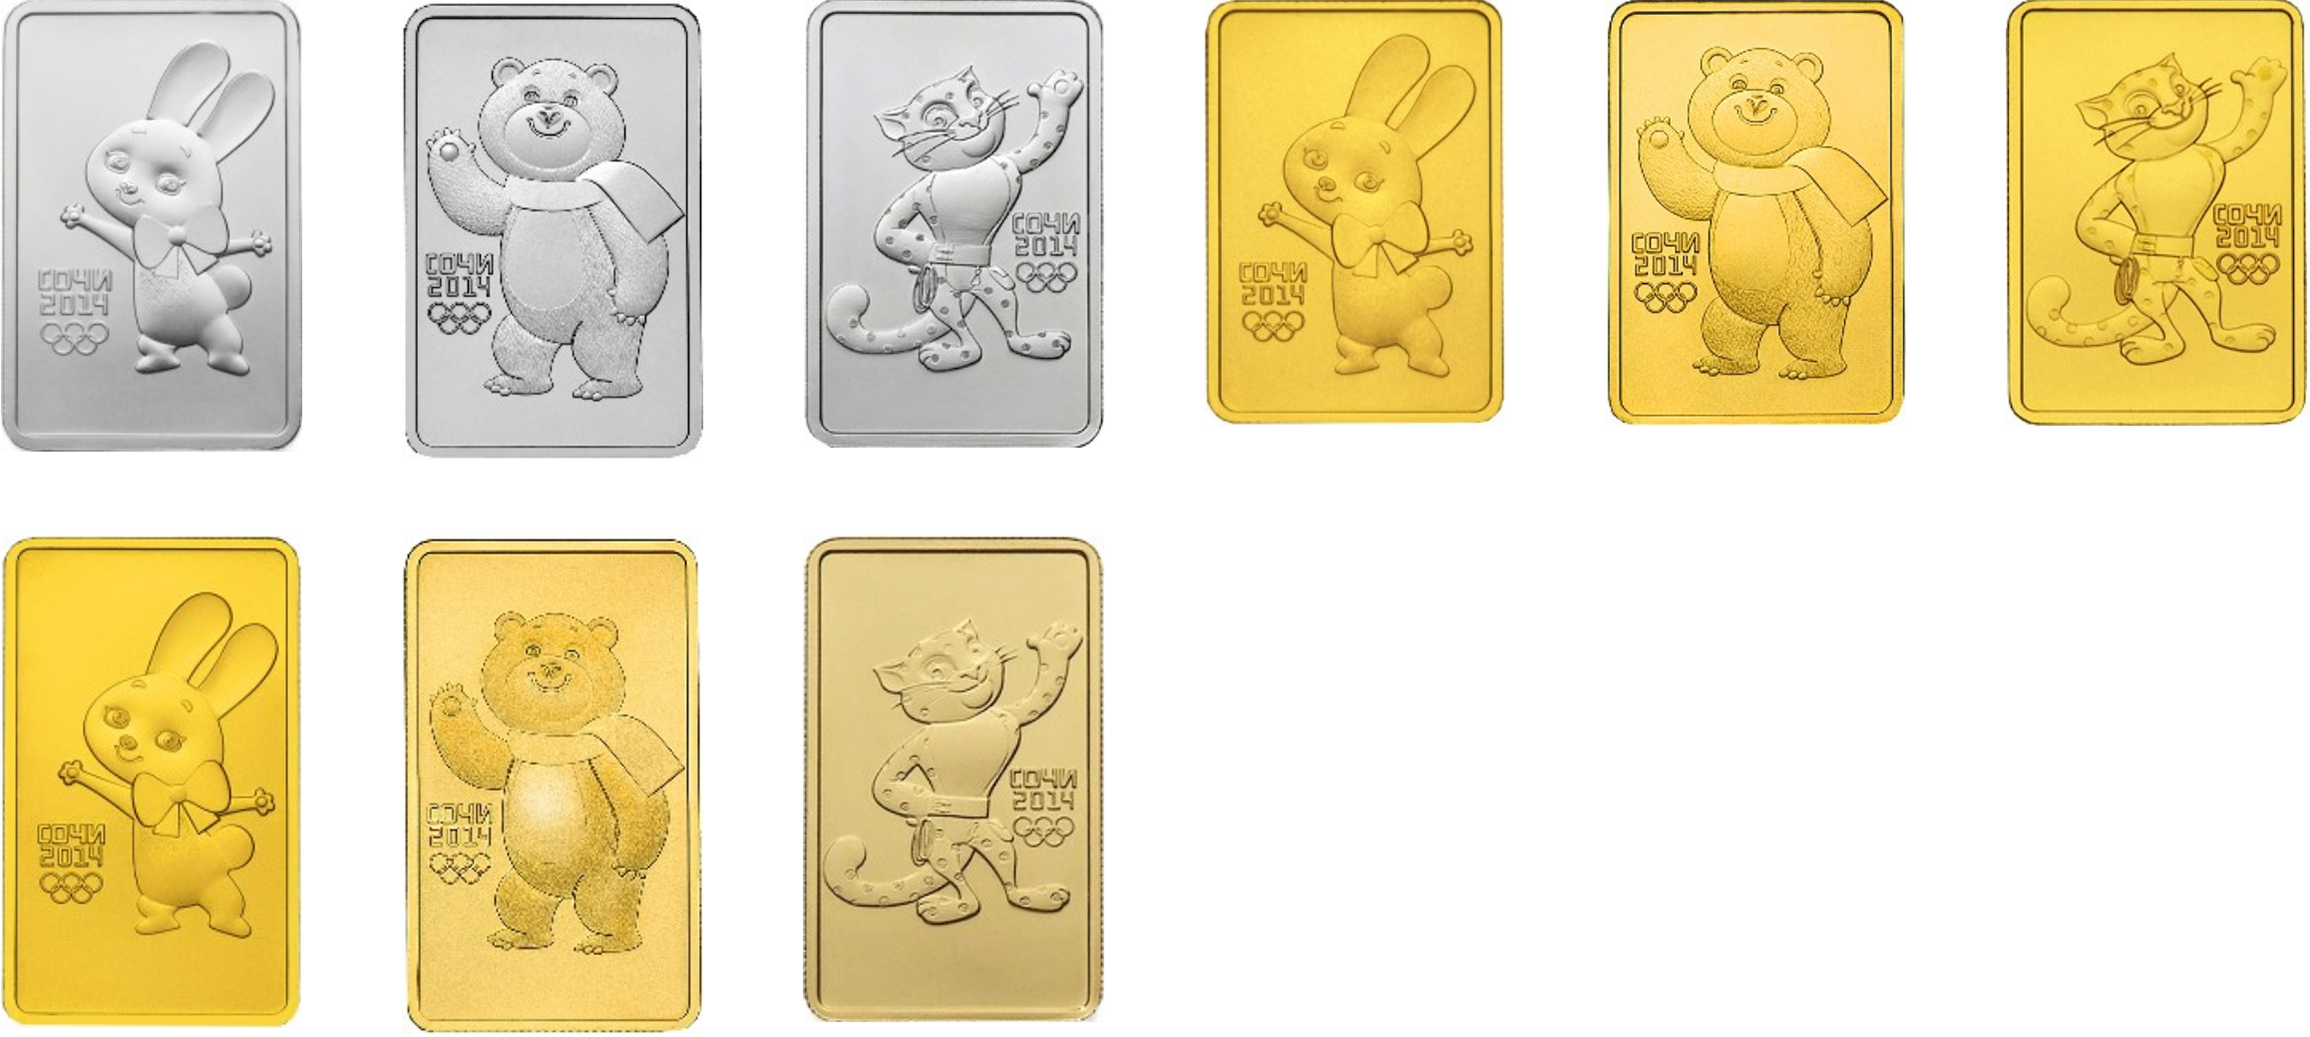 Инвестиционные монеты из золота и серебра, которые выпустили в честь Олимпийских и Паралимпийских Игр в Сочи в 2014 году. Источник: cbr.ru